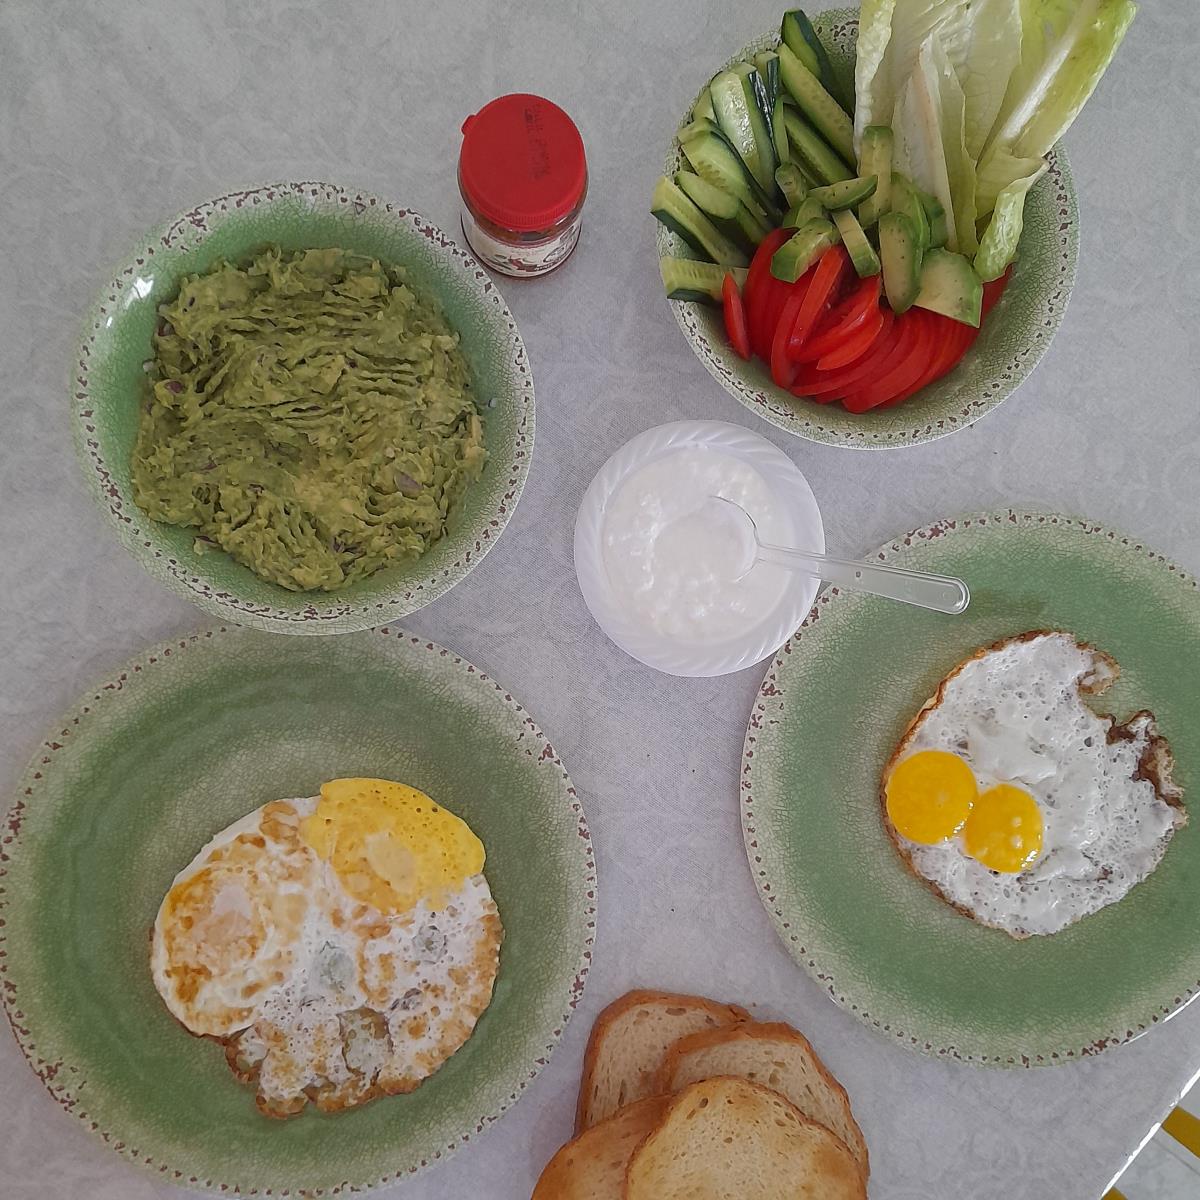 ארוחת בוקר בקטנה🙃 
לצד קנקן לימונענע קריר 